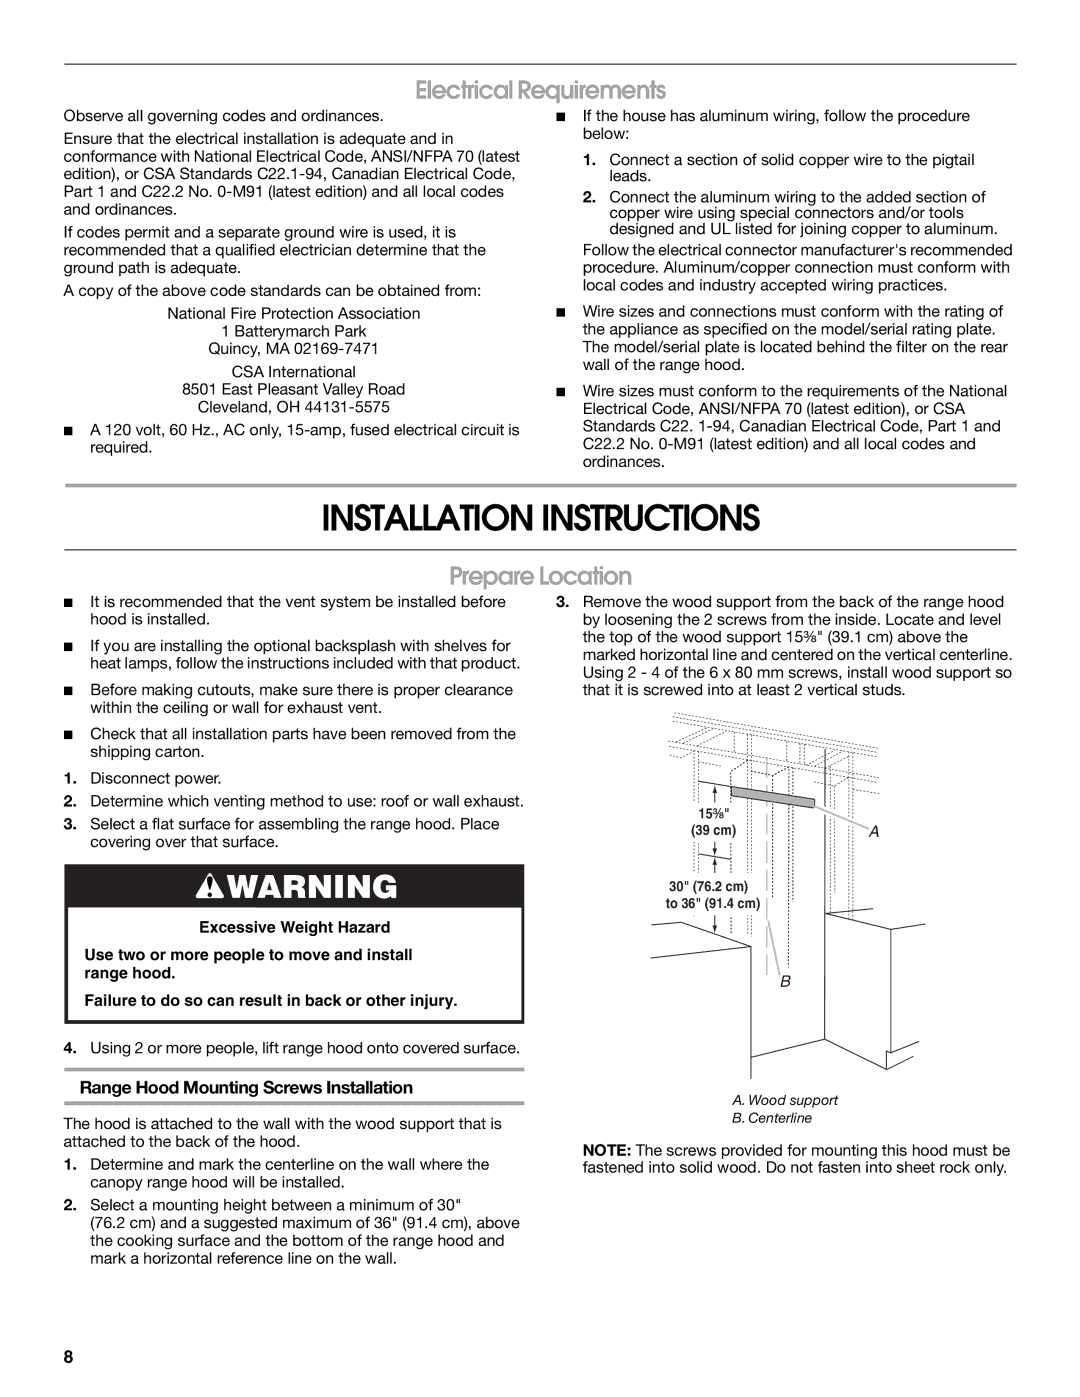 Jenn-Air LI3UNB/W10274316B installation instructions Installation Instructions, Electrical Requirements, Prepare Location 